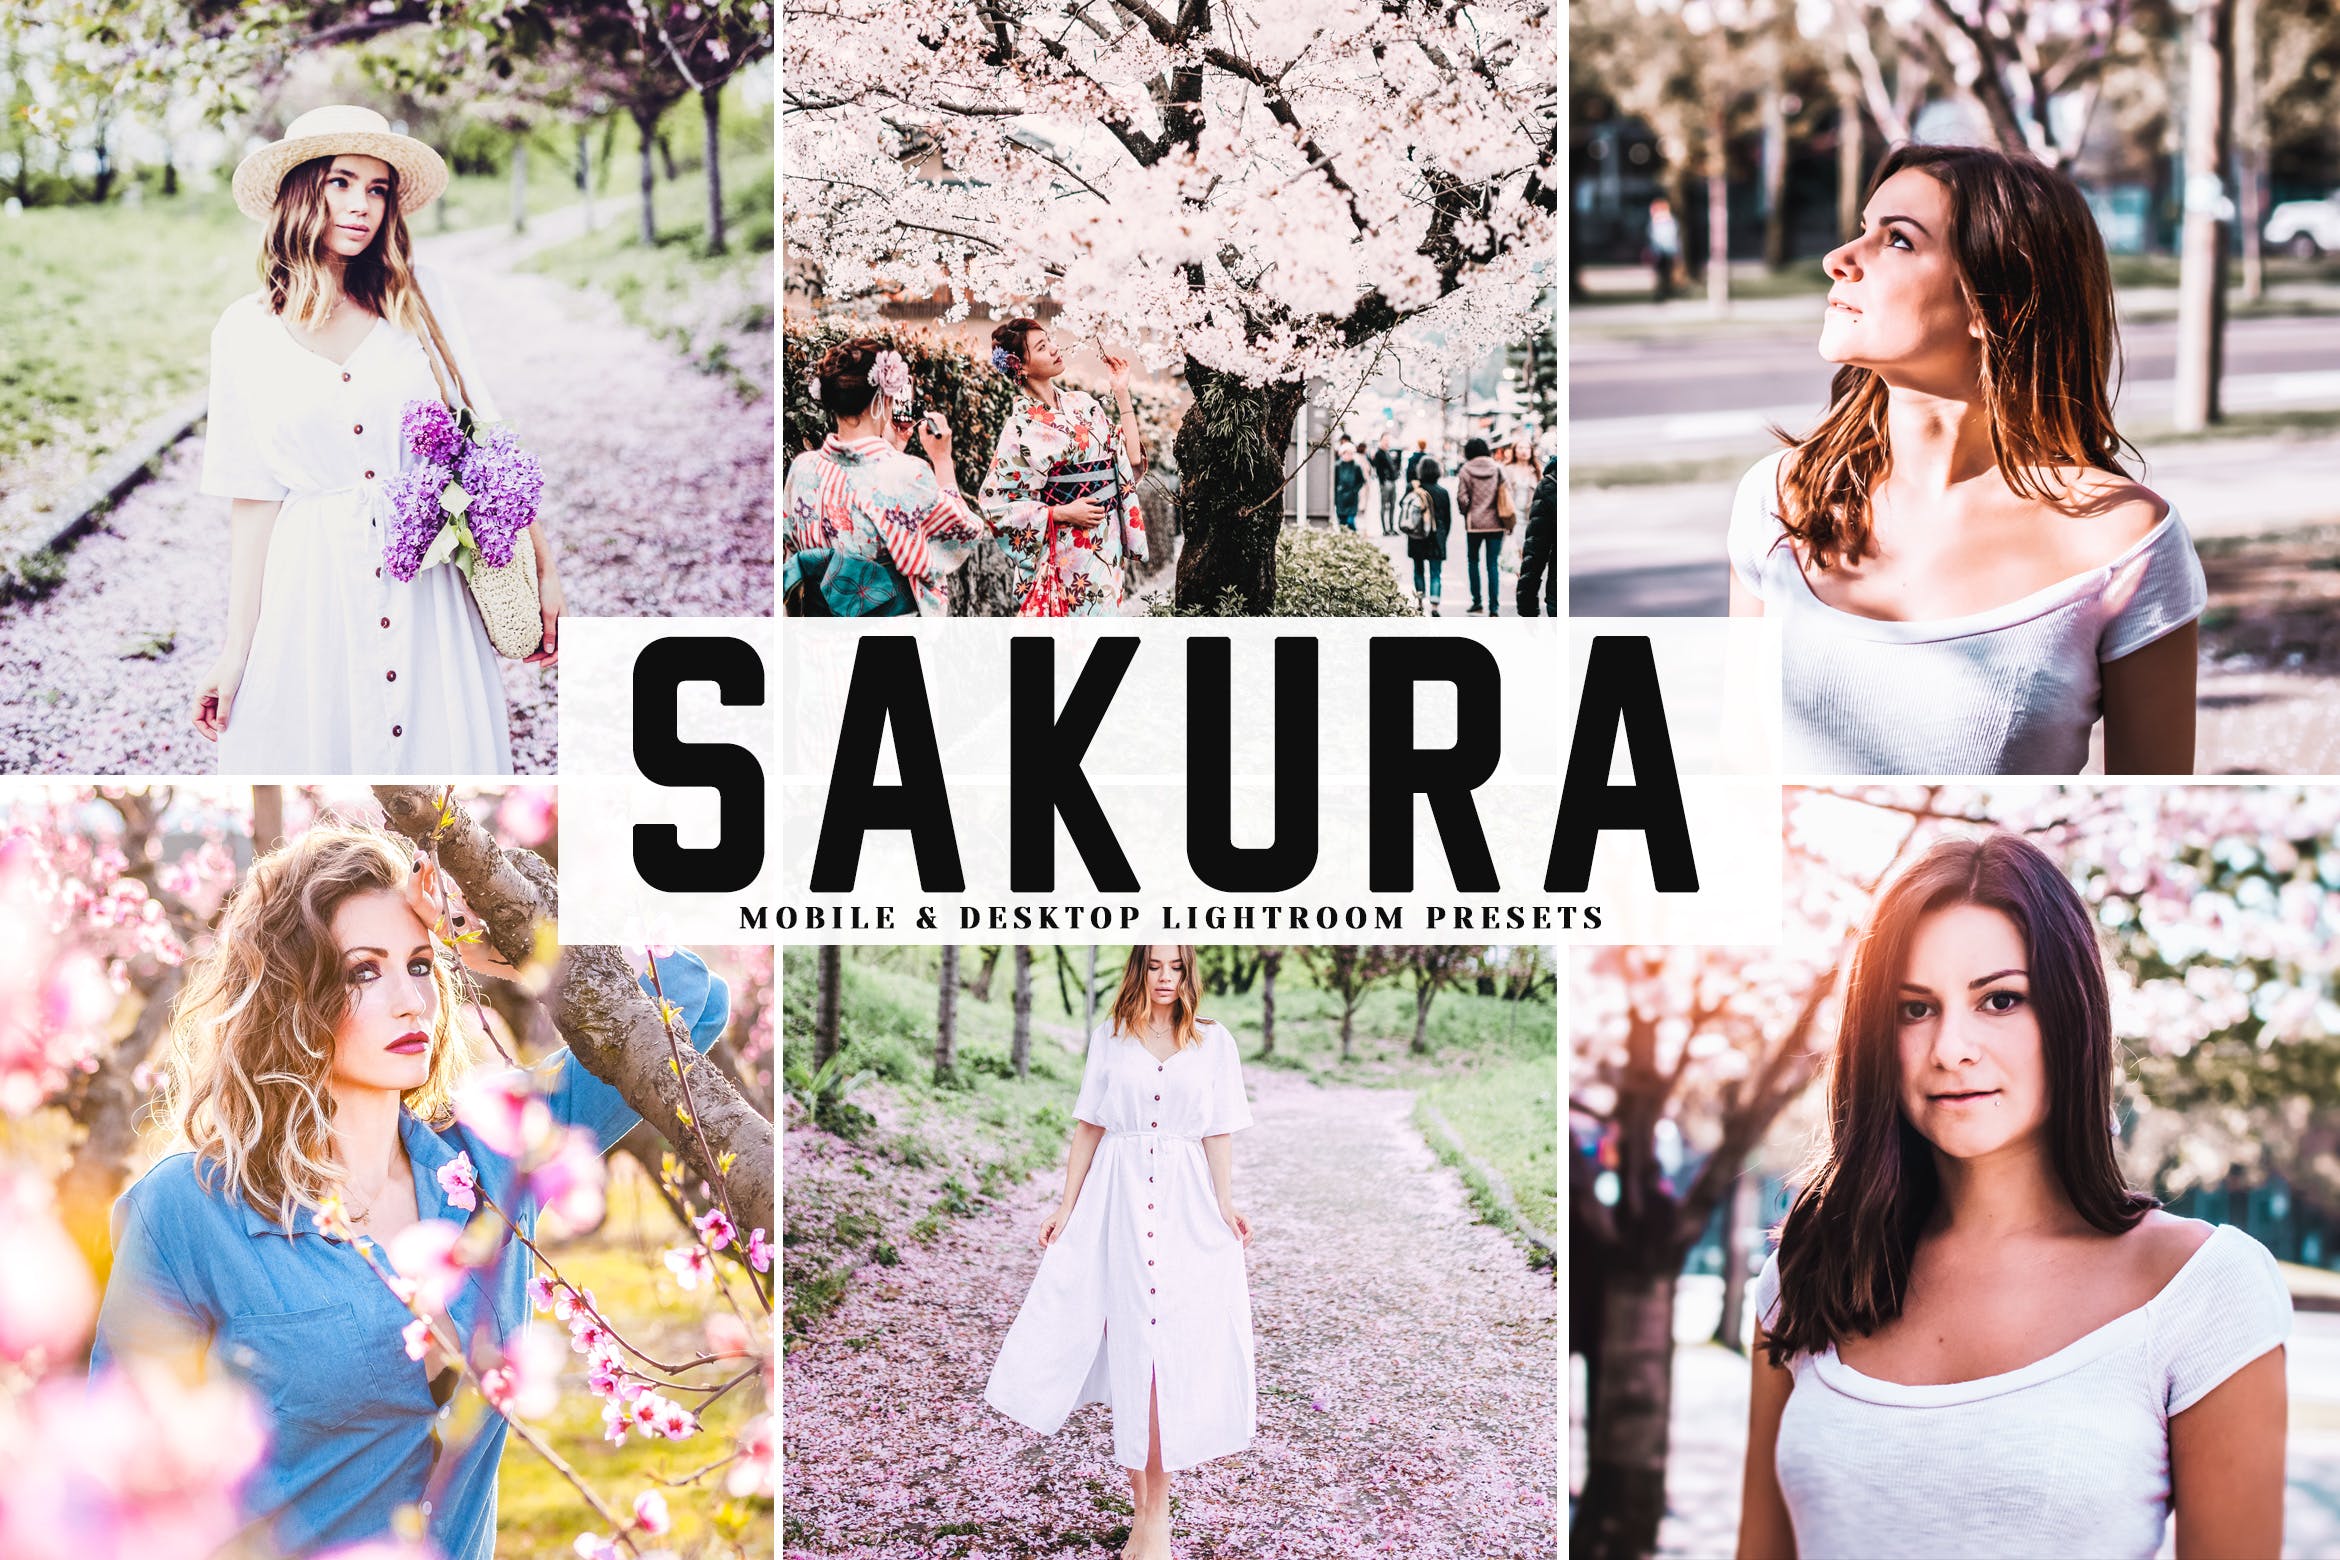 低饱和度柔和色调照片调色滤镜非凡图库精选LR预设 Sakura Mobile & Desktop Lightroom Presets插图